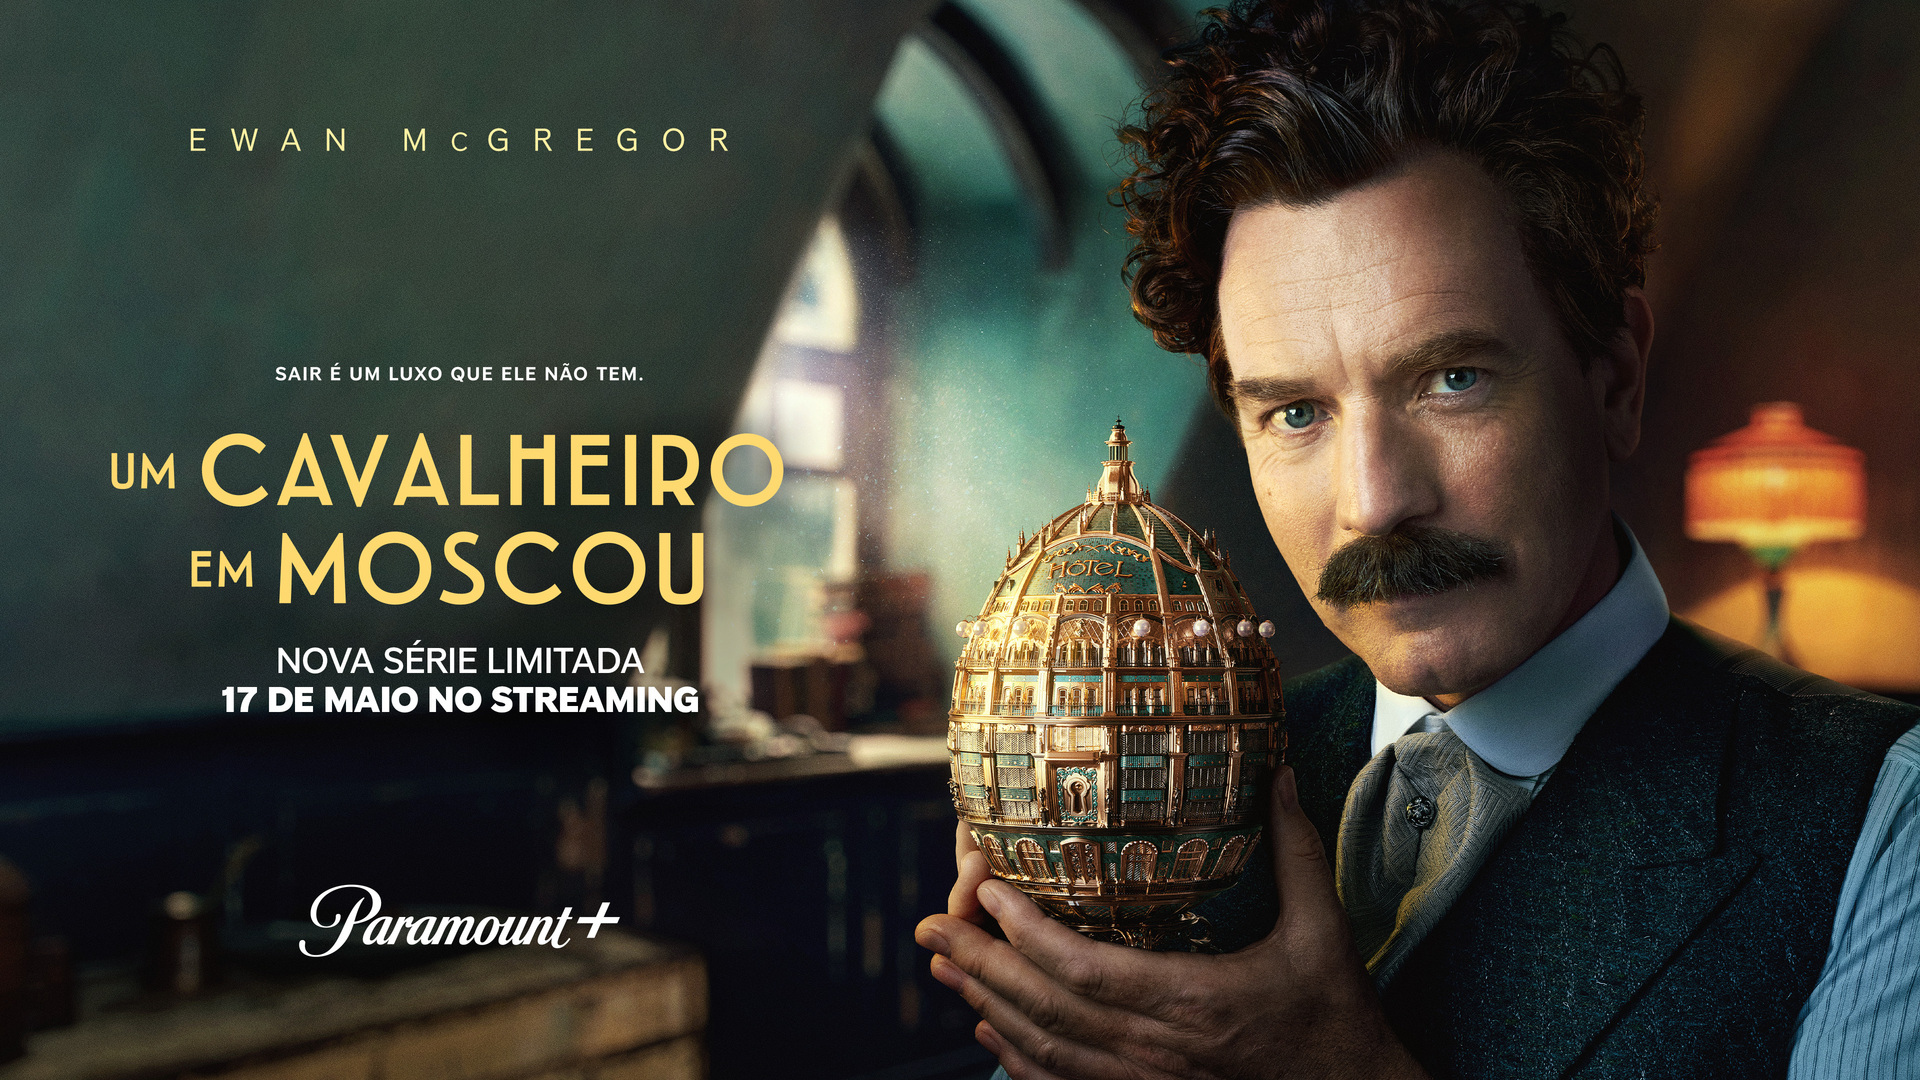 Um Cavalheiro em Moscou estreia nesta sexta no Paramount+